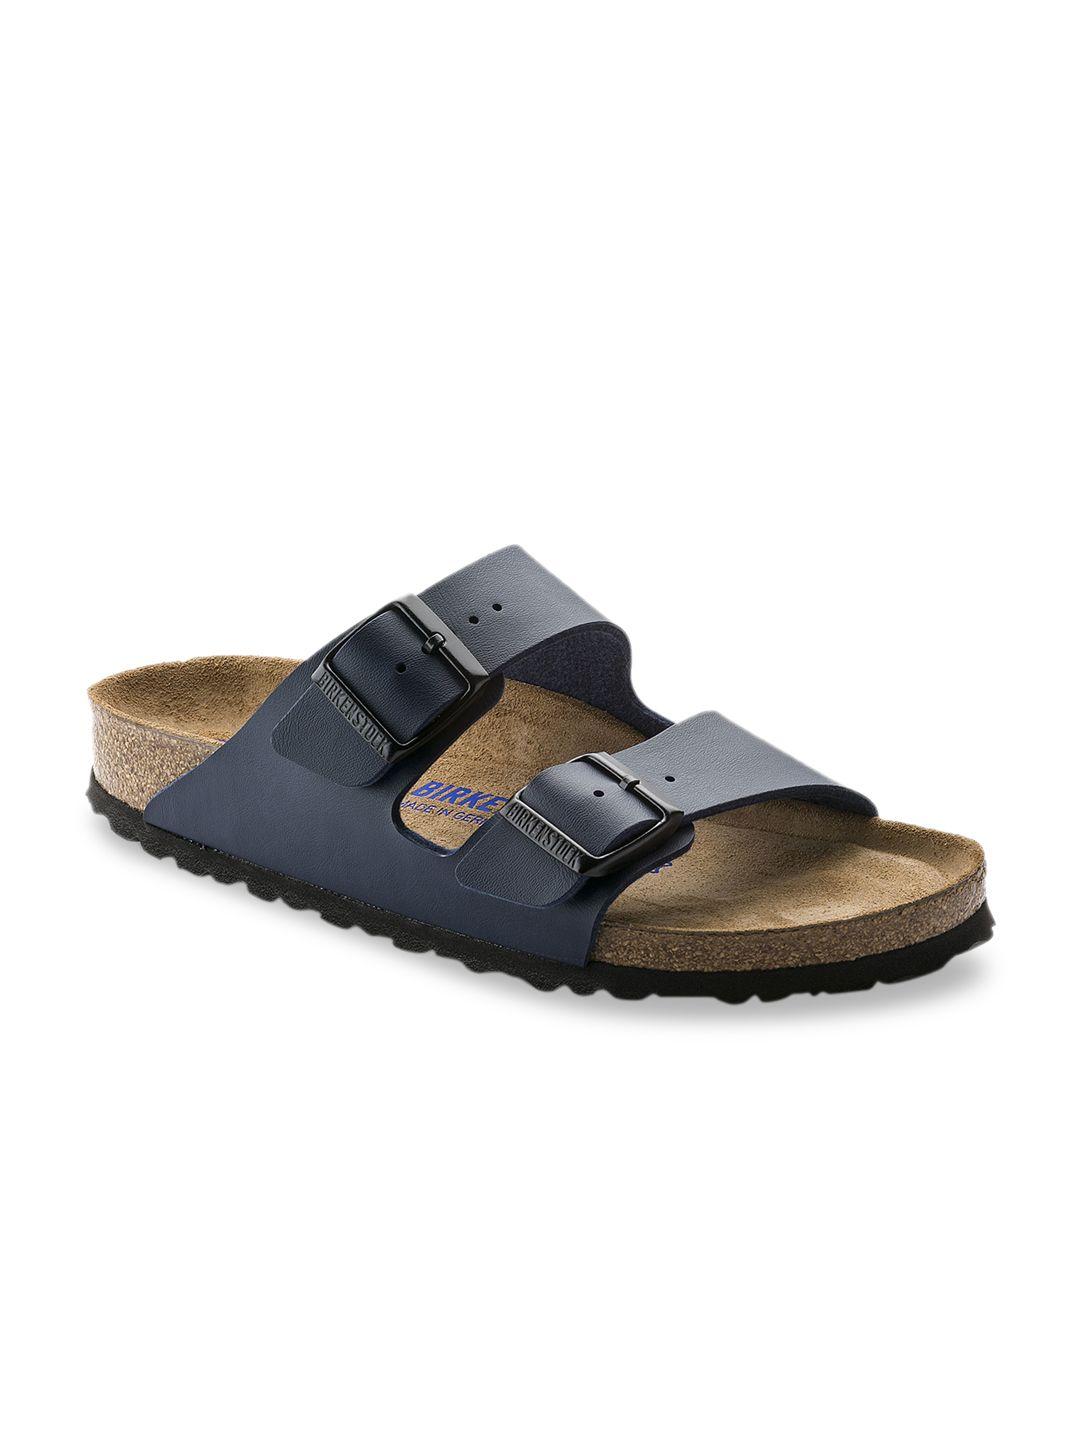 birkenstock unisex navy blue arizona birko-flor solid narrow width sandals